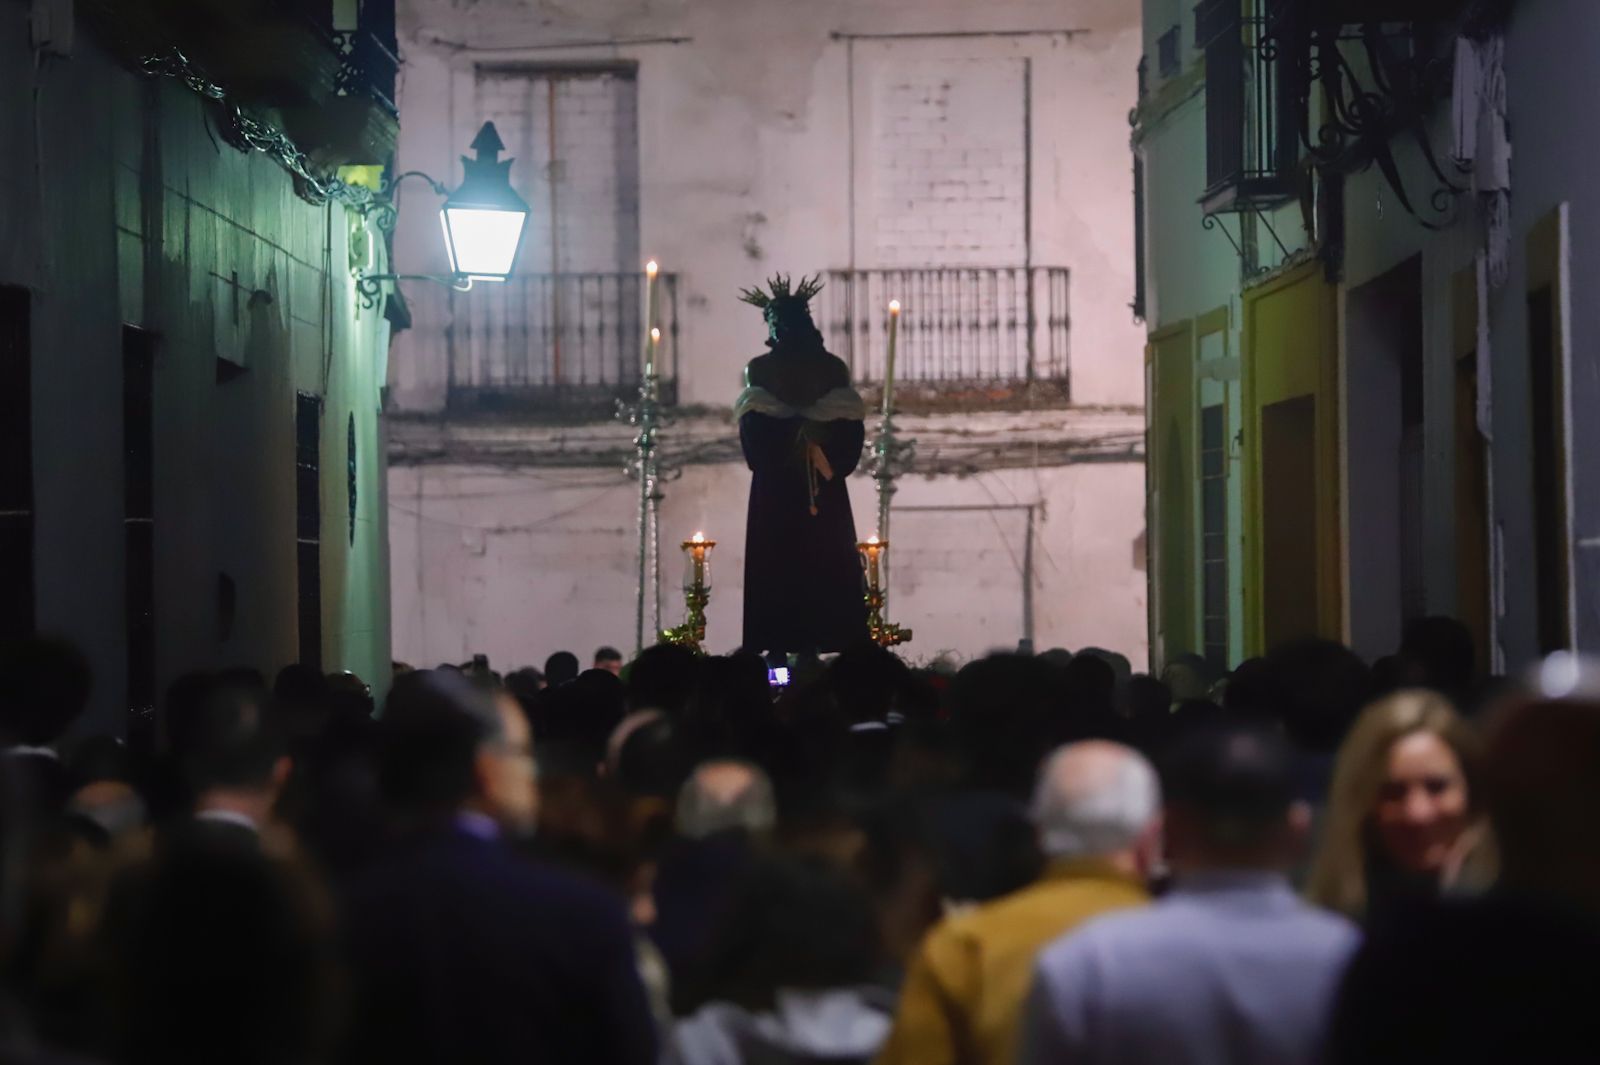 El Santo Sepulcro y Las Penas de San Andrés abren la cuaresma